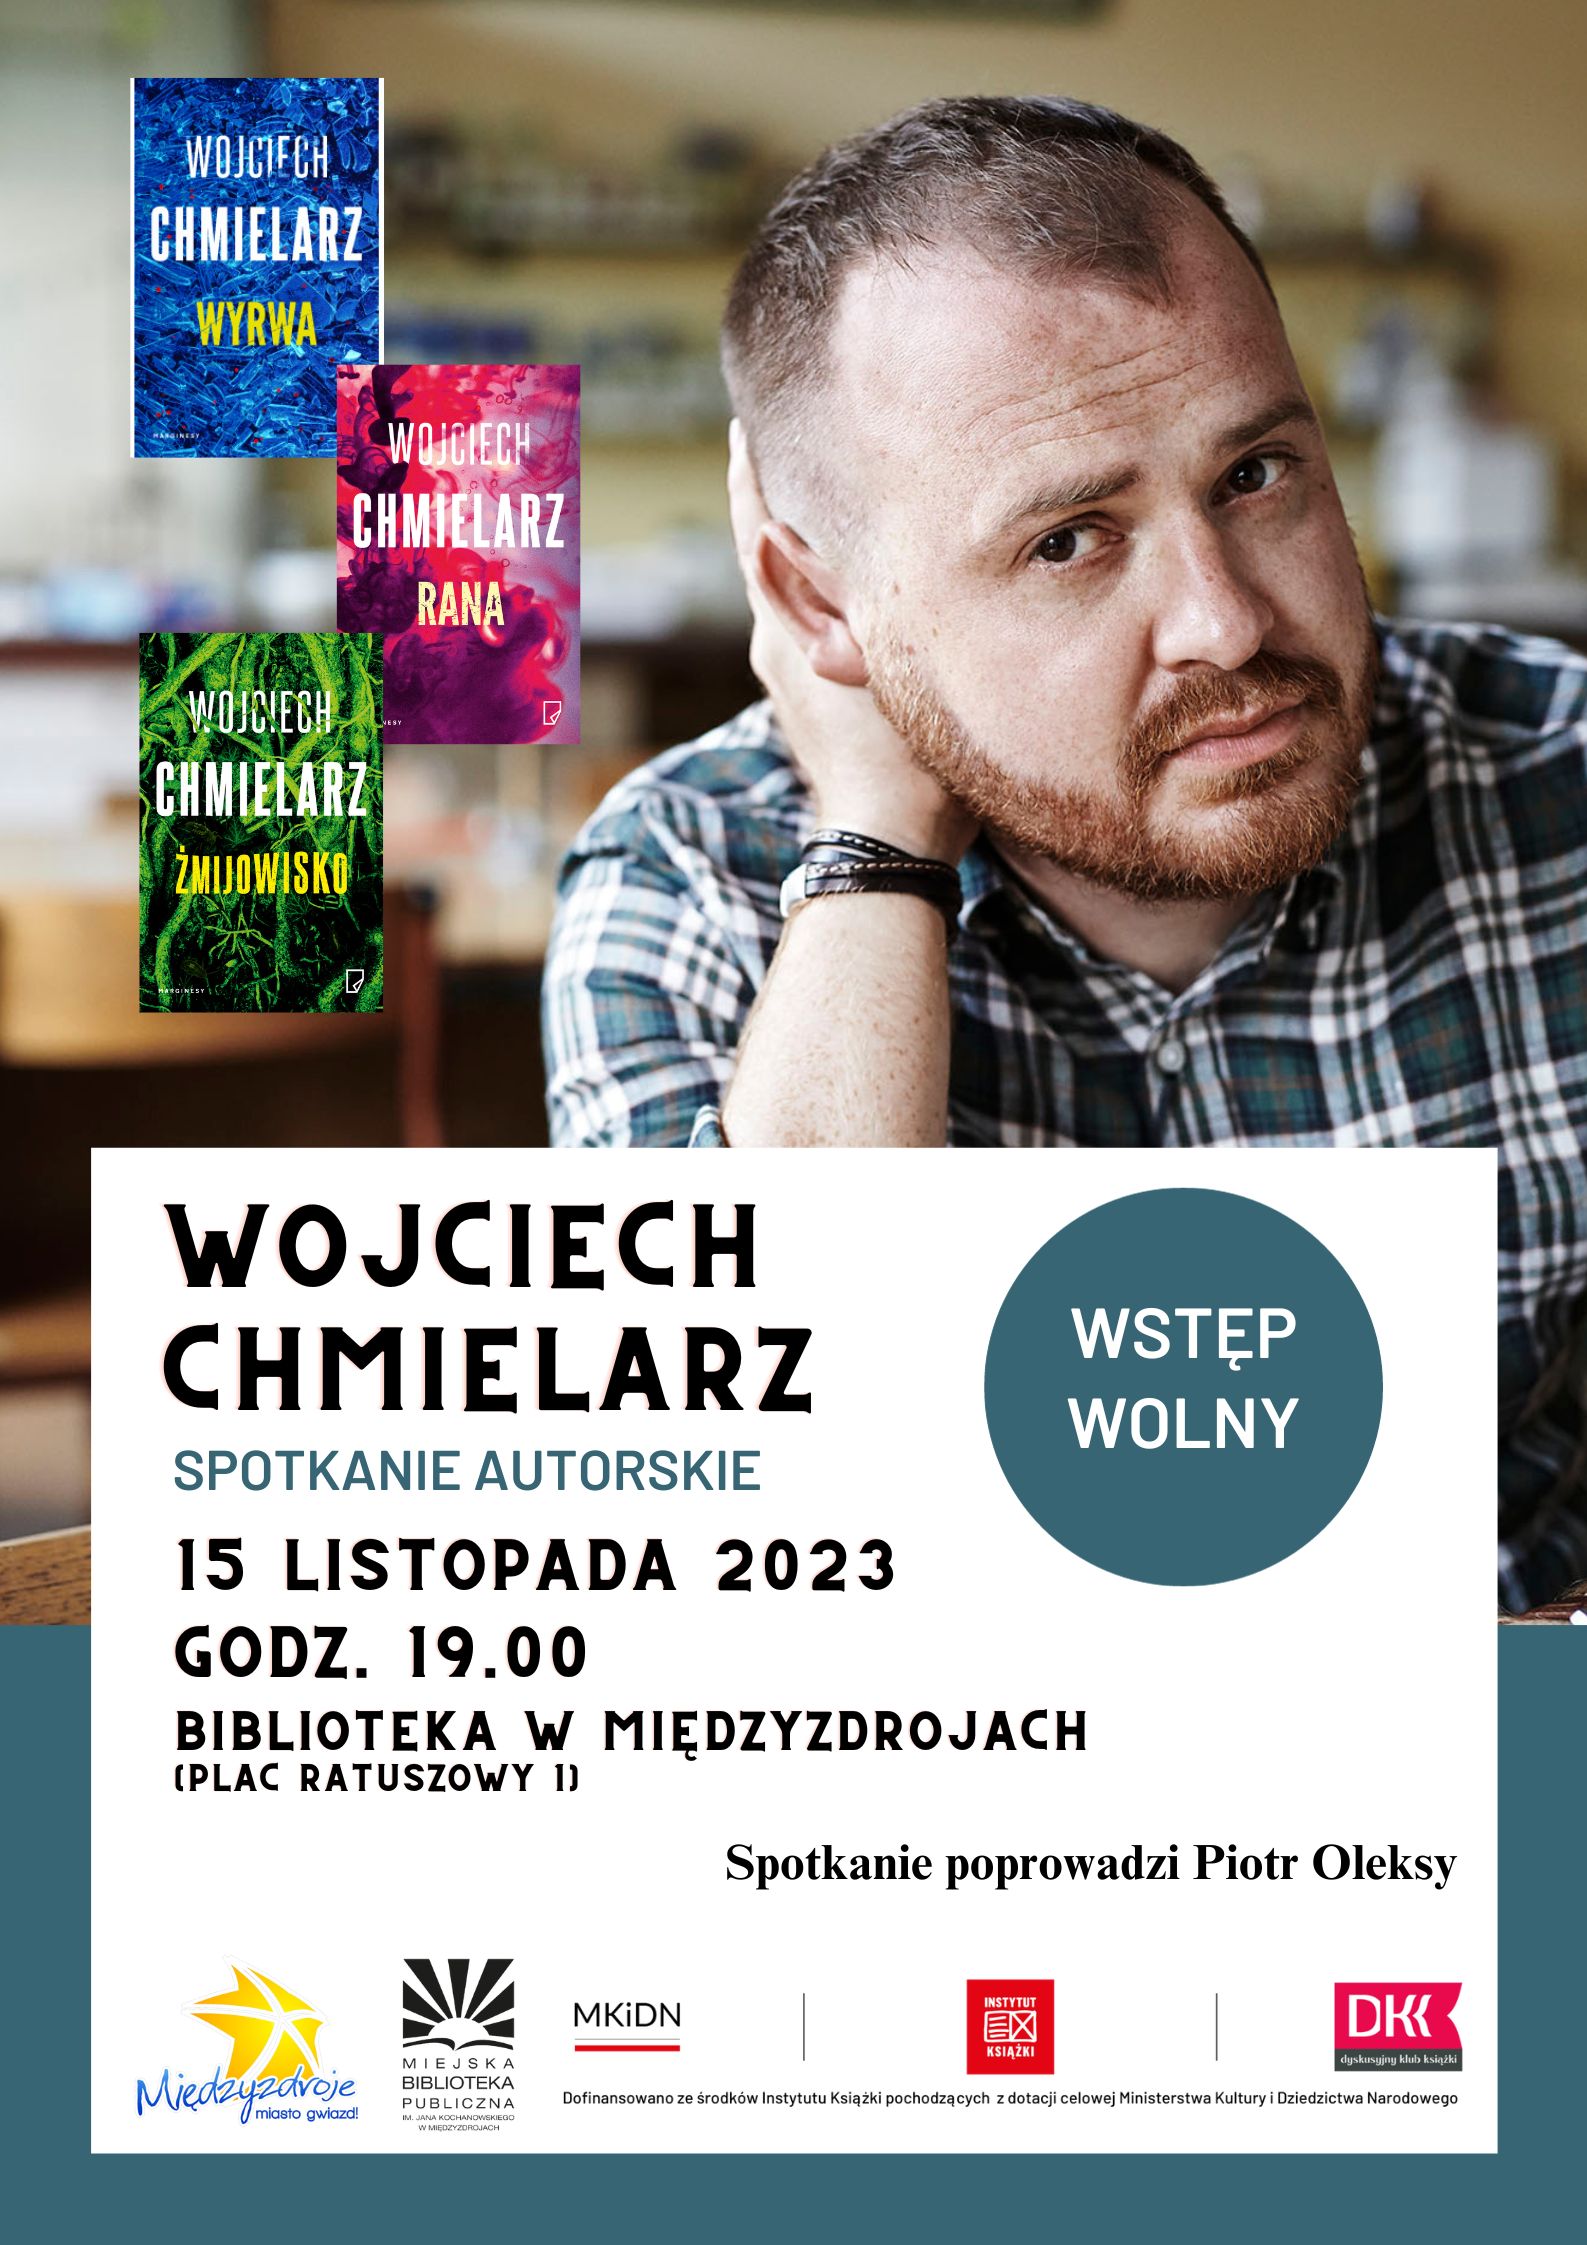 Spotkanie autorskie z Wojciechem Chmielarzem 15 listopada 2023 r. - zapowiedź